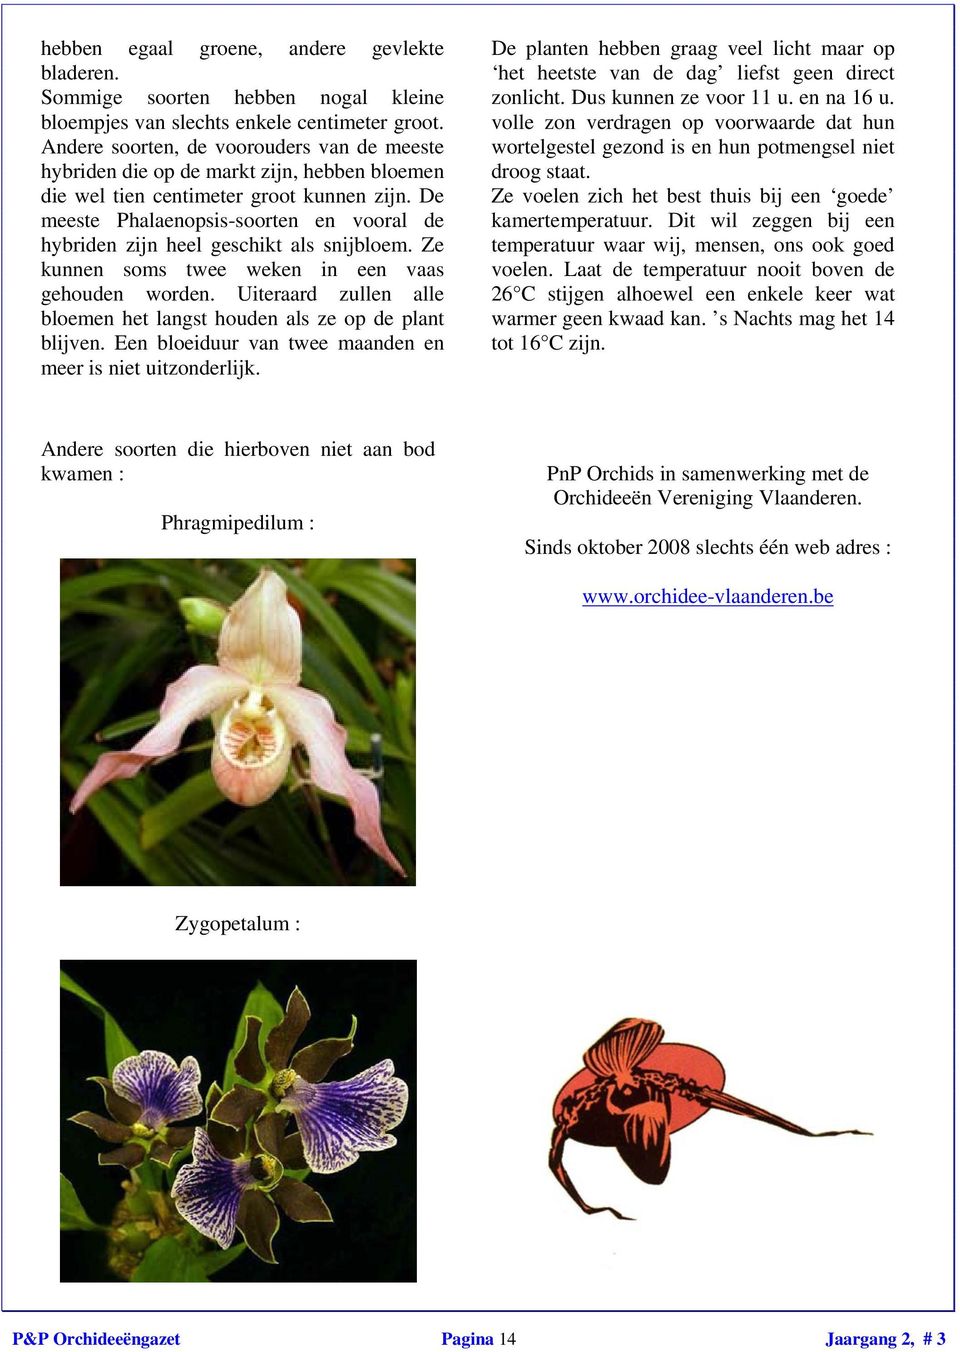 De meeste Phalaenopsis-soorten en vooral de hybriden zijn heel geschikt als snijbloem. Ze kunnen soms twee weken in een vaas gehouden worden.